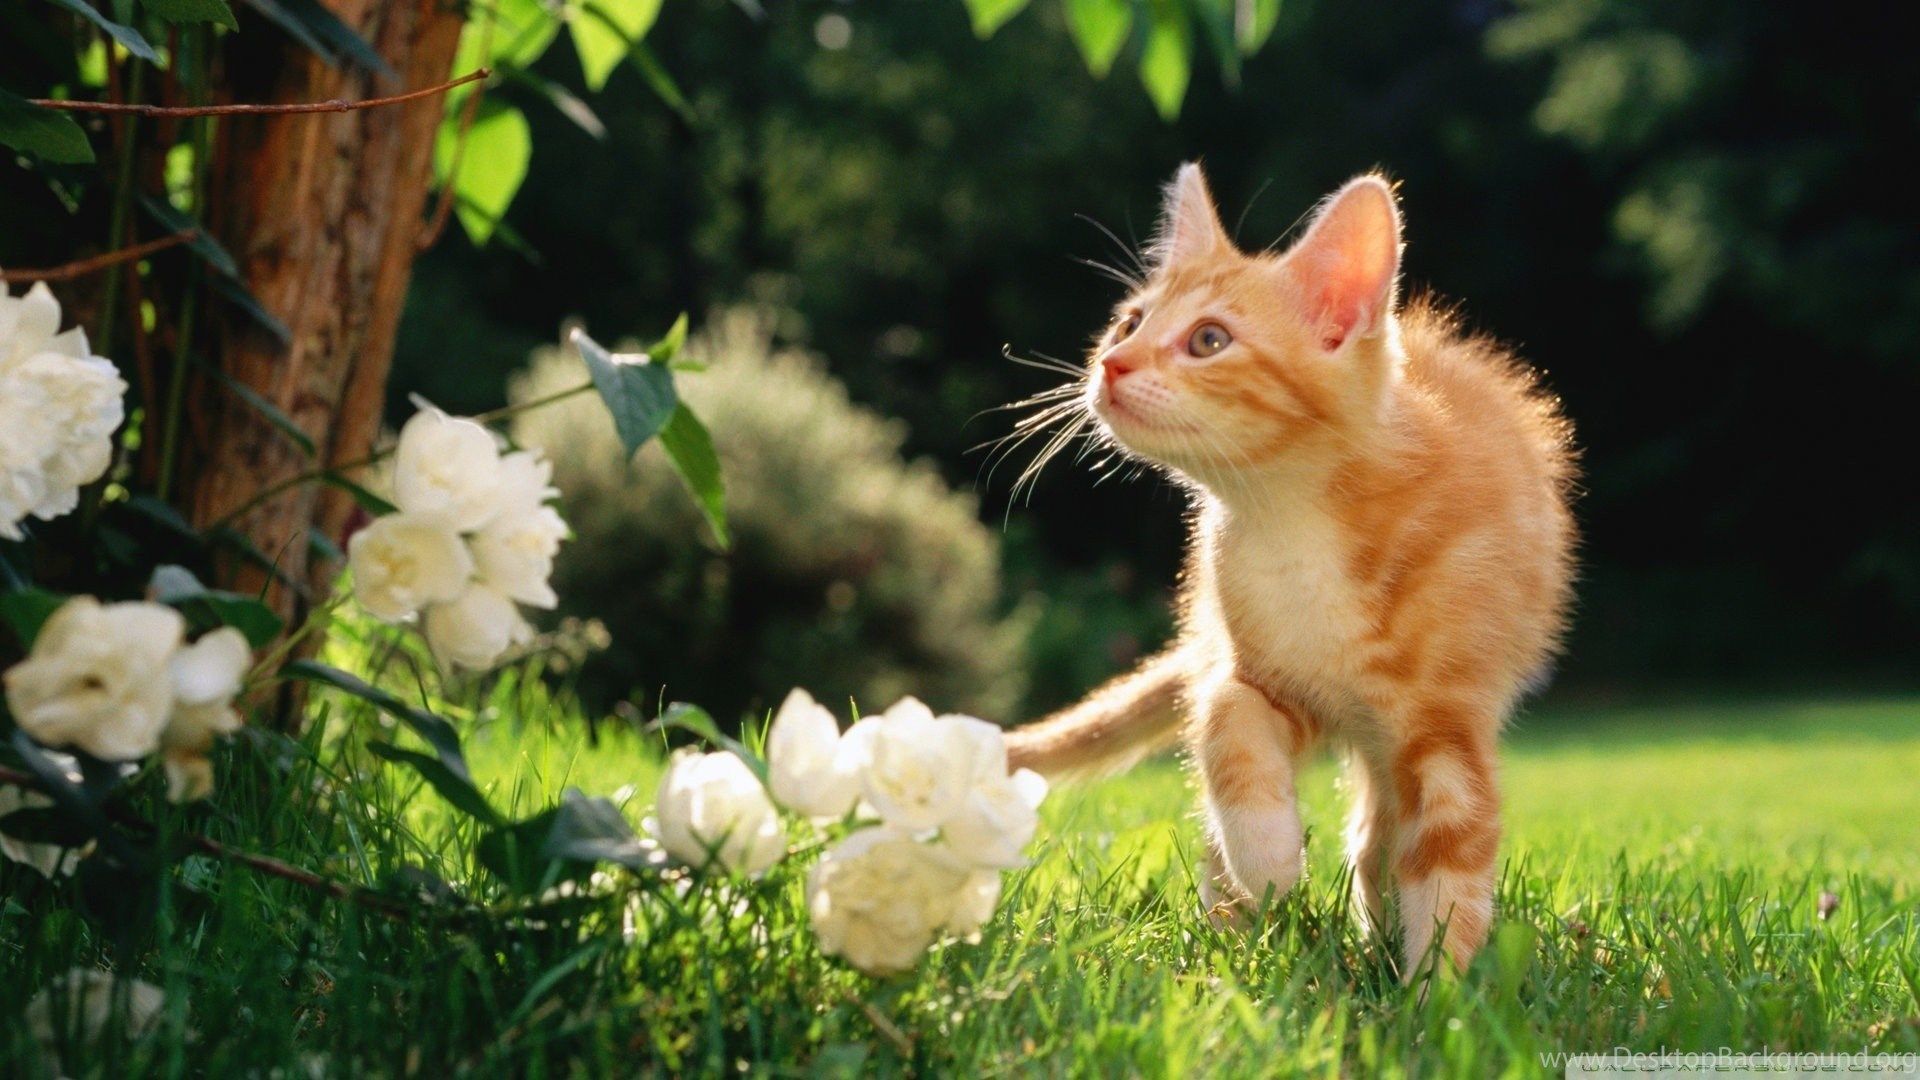 Cats: Orange Tabby Kitten Cat Ginger Flower Wallpaper For Desktop. Desktop Background